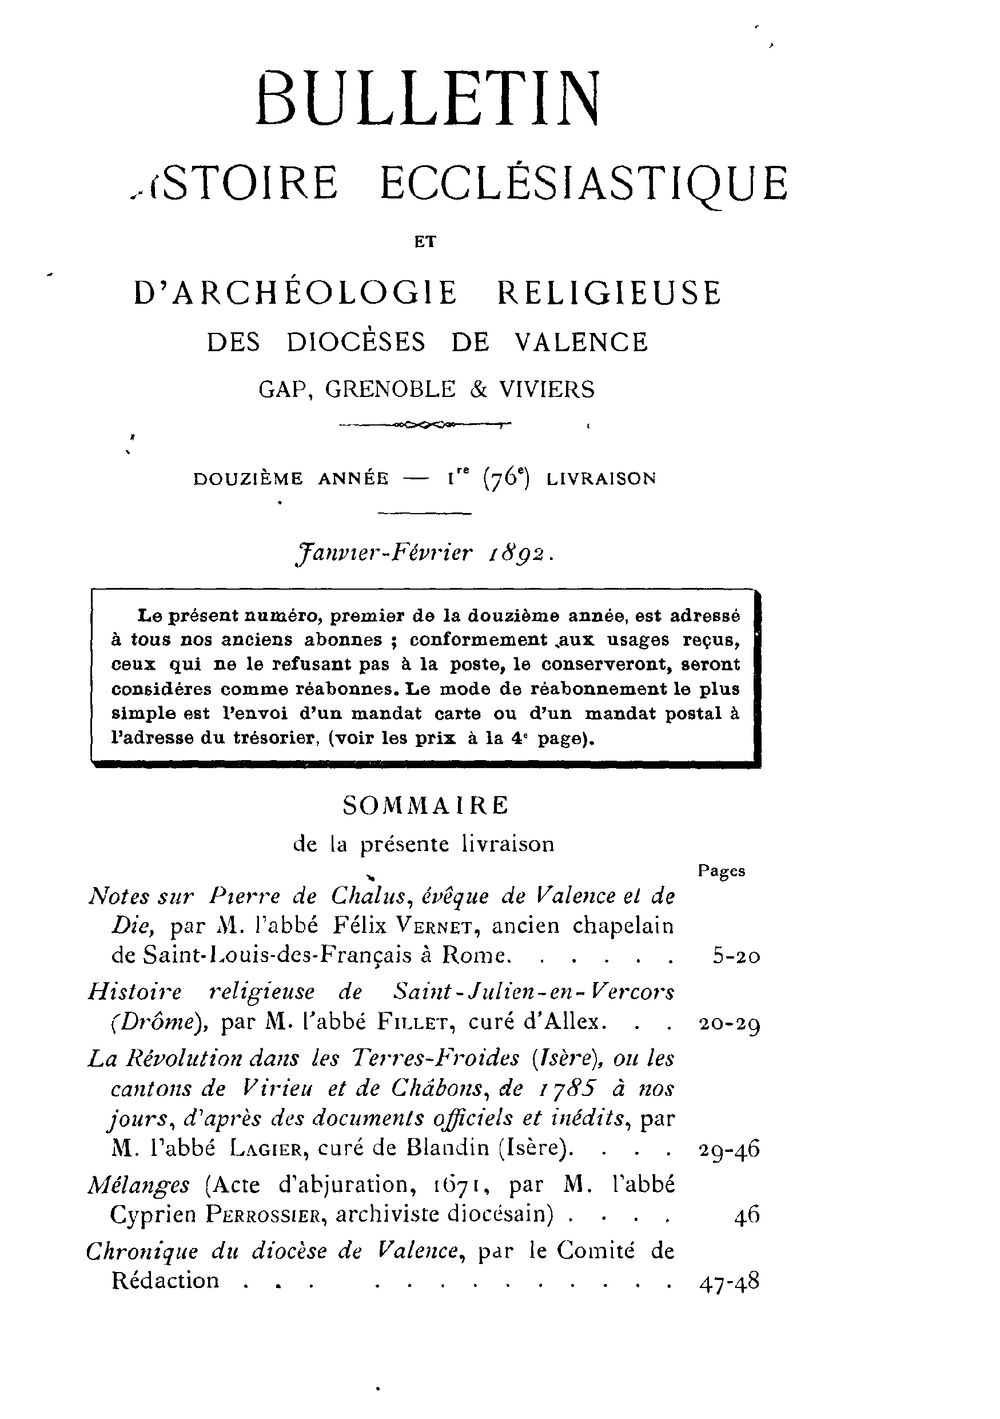 Bulletin d'histoire ecclesiastique et d'archéologie religieuse des diocèses de Valence, Gap, Grenoble et Viviers